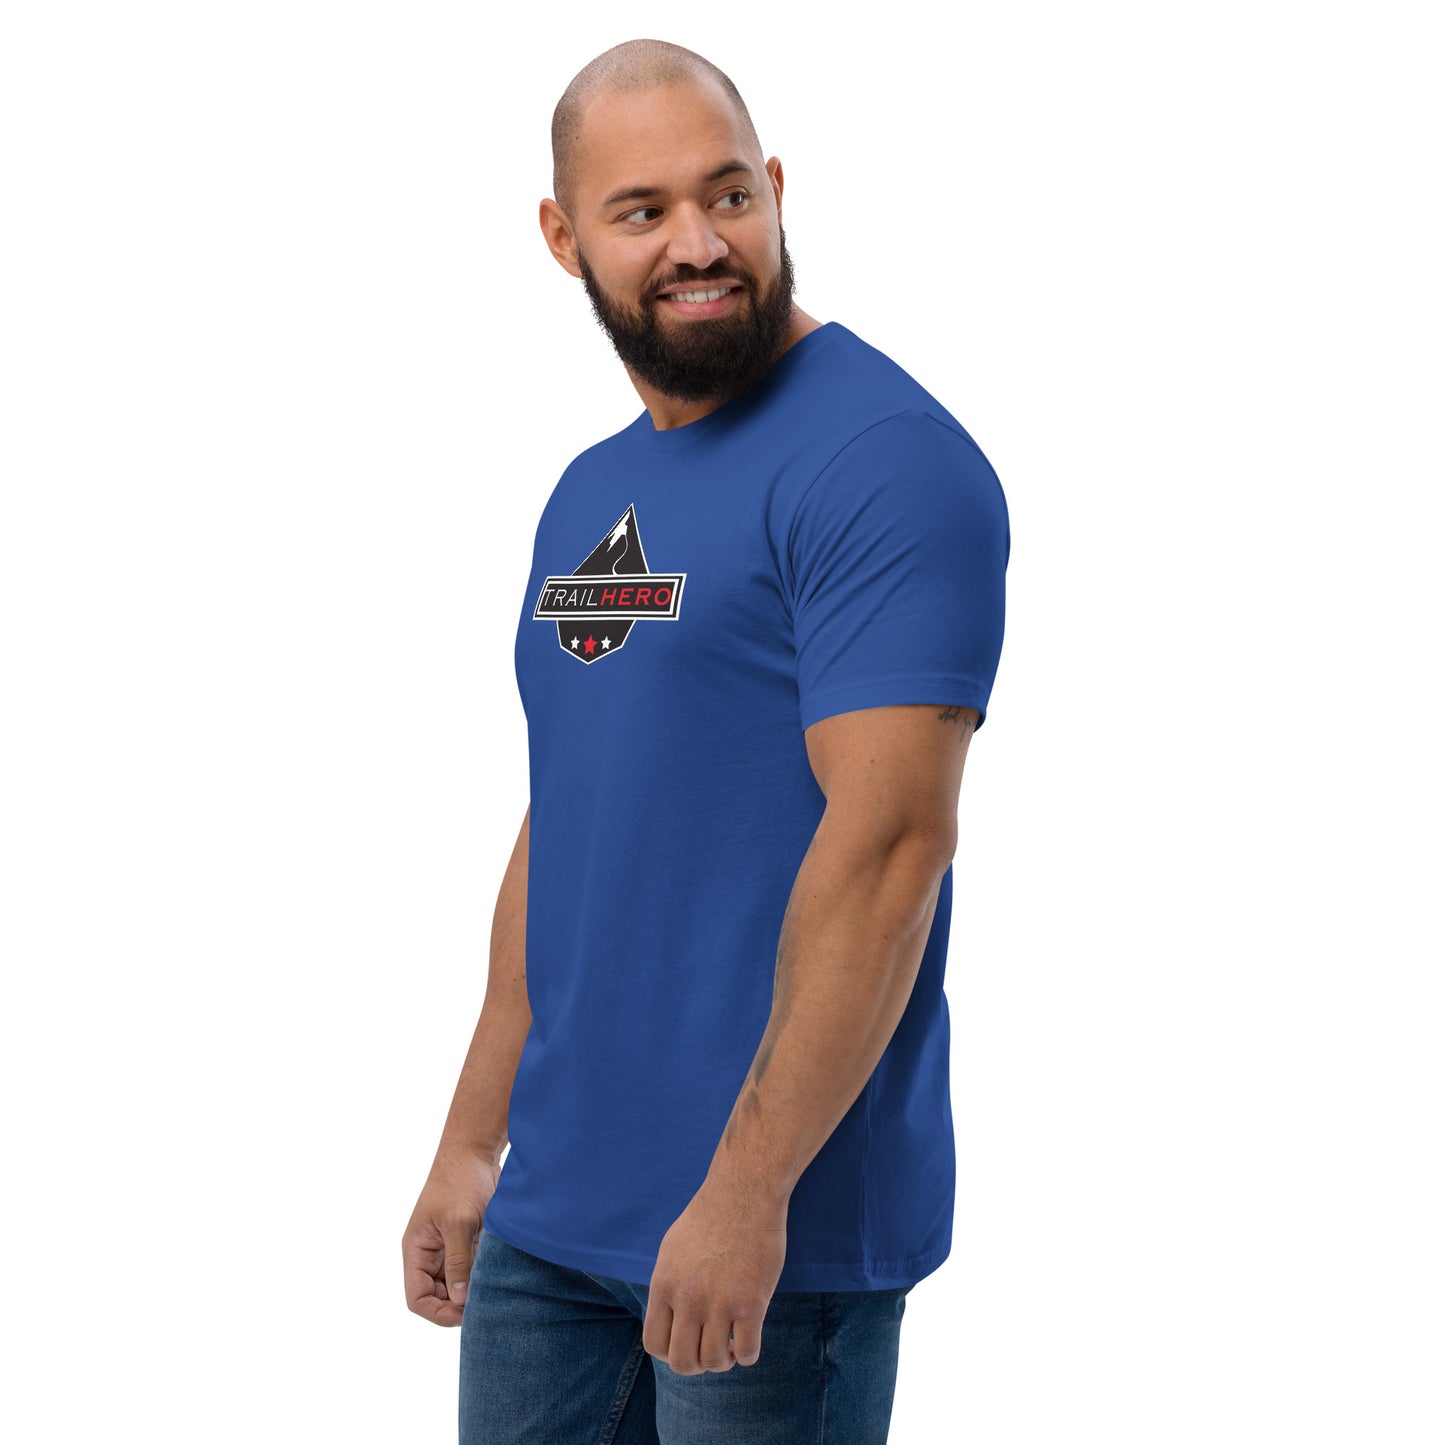 Trail Hero - Unisex - Full Color Flag - Pre-Shrunk 100% Cotton Next Level T-Shirt - 4 Colors